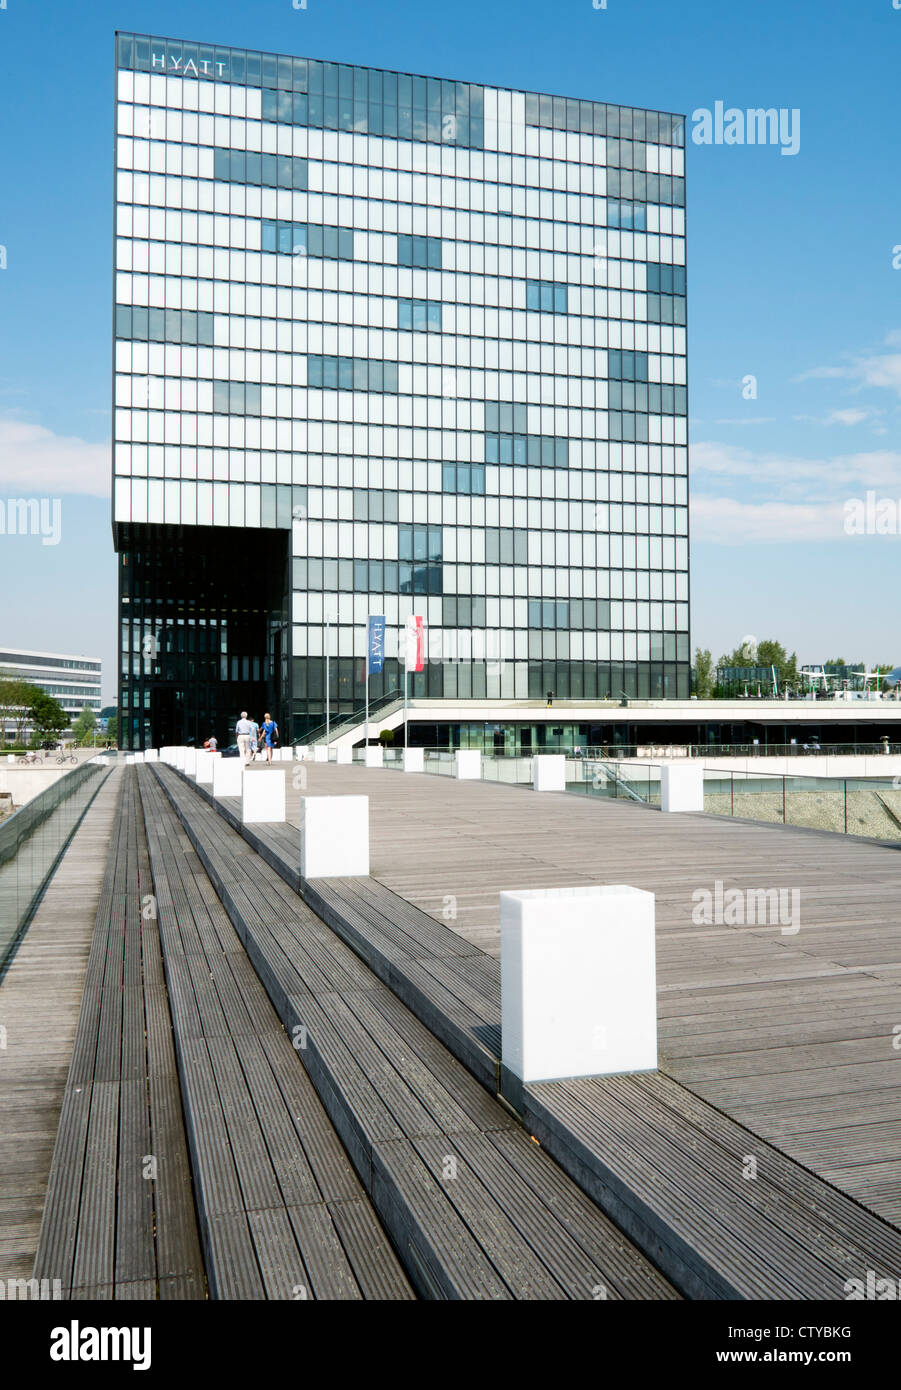 Modernes Design in Hyatt Regency Hotel im Medienhafen oder Medienhafen Bezirk Düsseldorf Deutschland Stockfoto